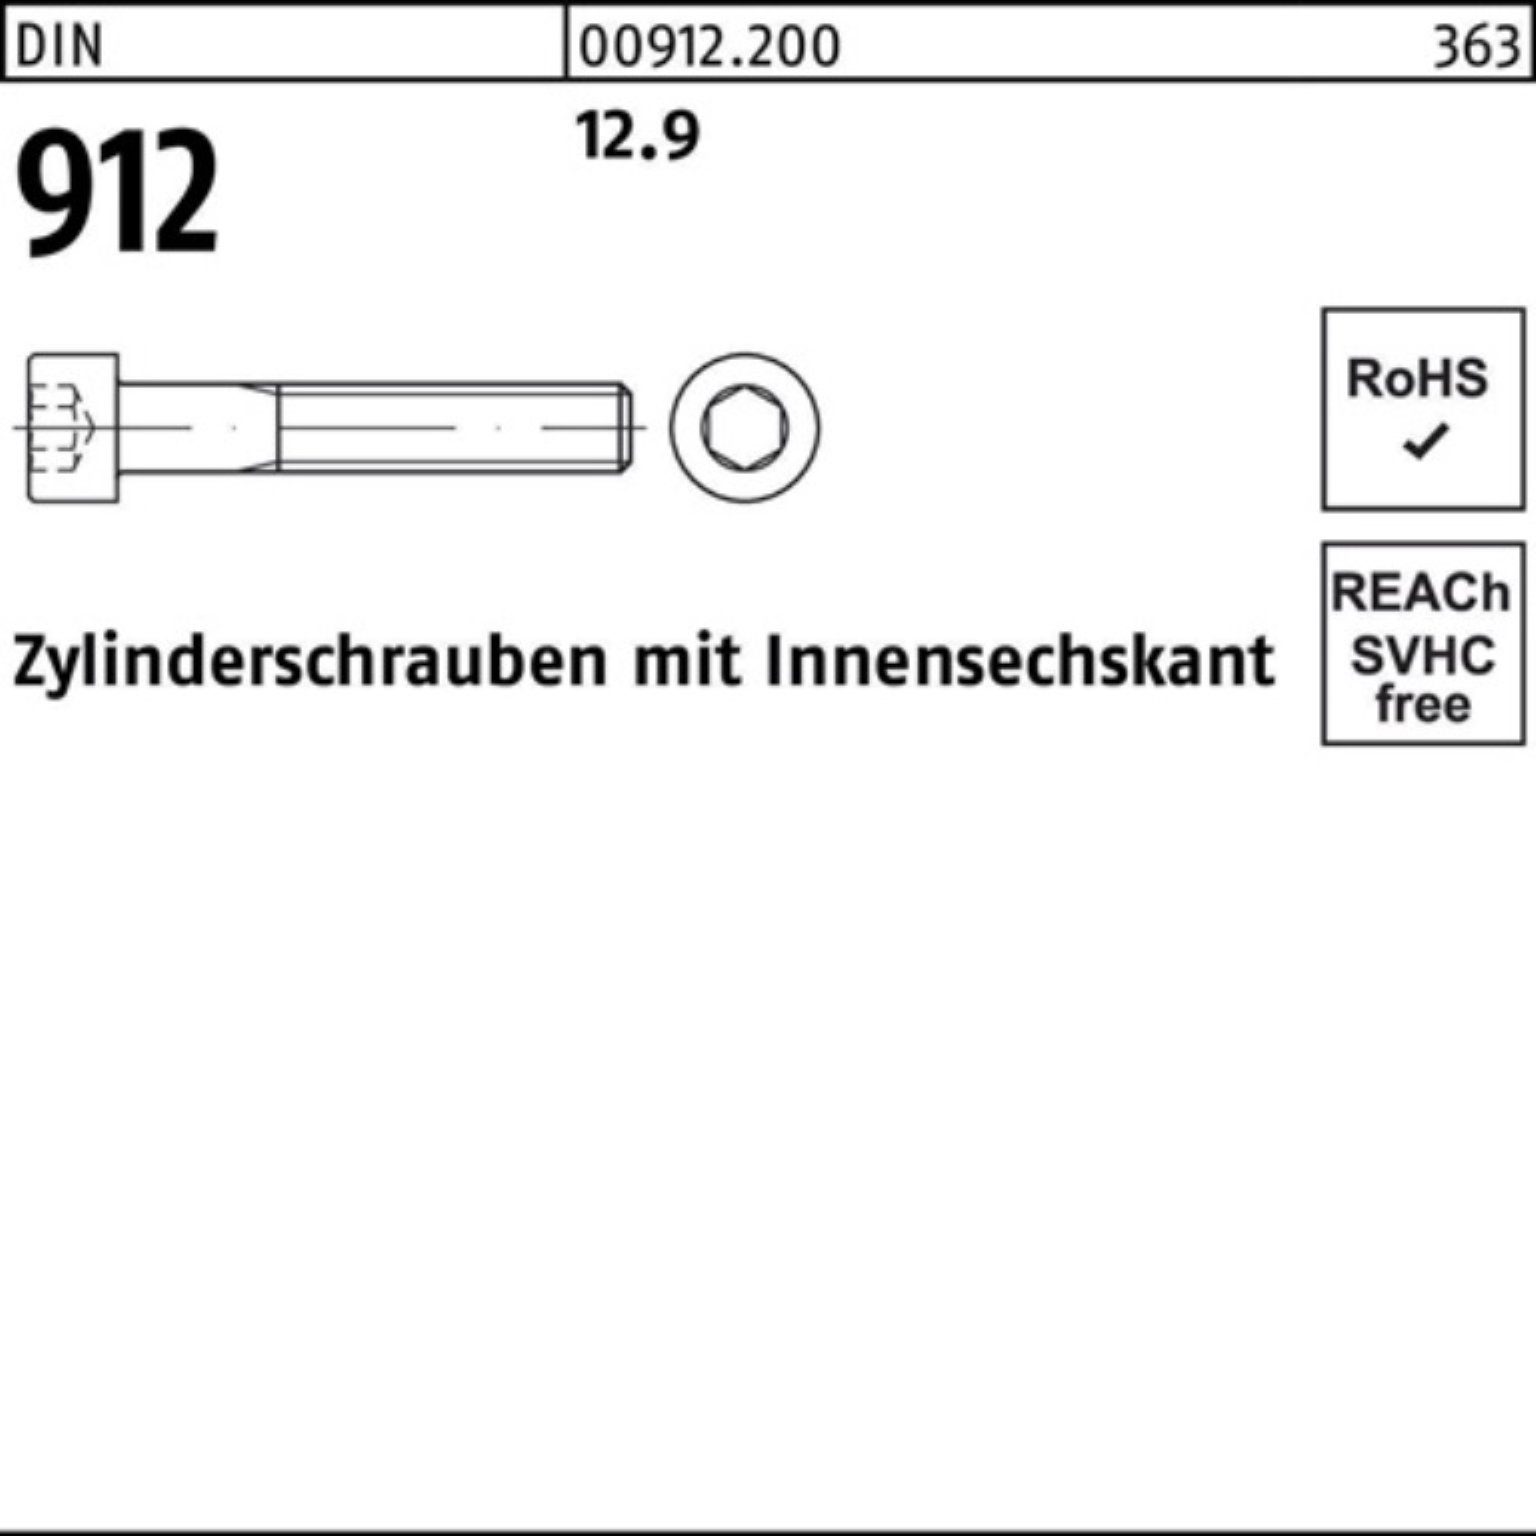 Zylinderschraube Innen-6kt DIN Pack Zylinderschraube 22 100 Reyher M12x 100er Stück 12.9 912